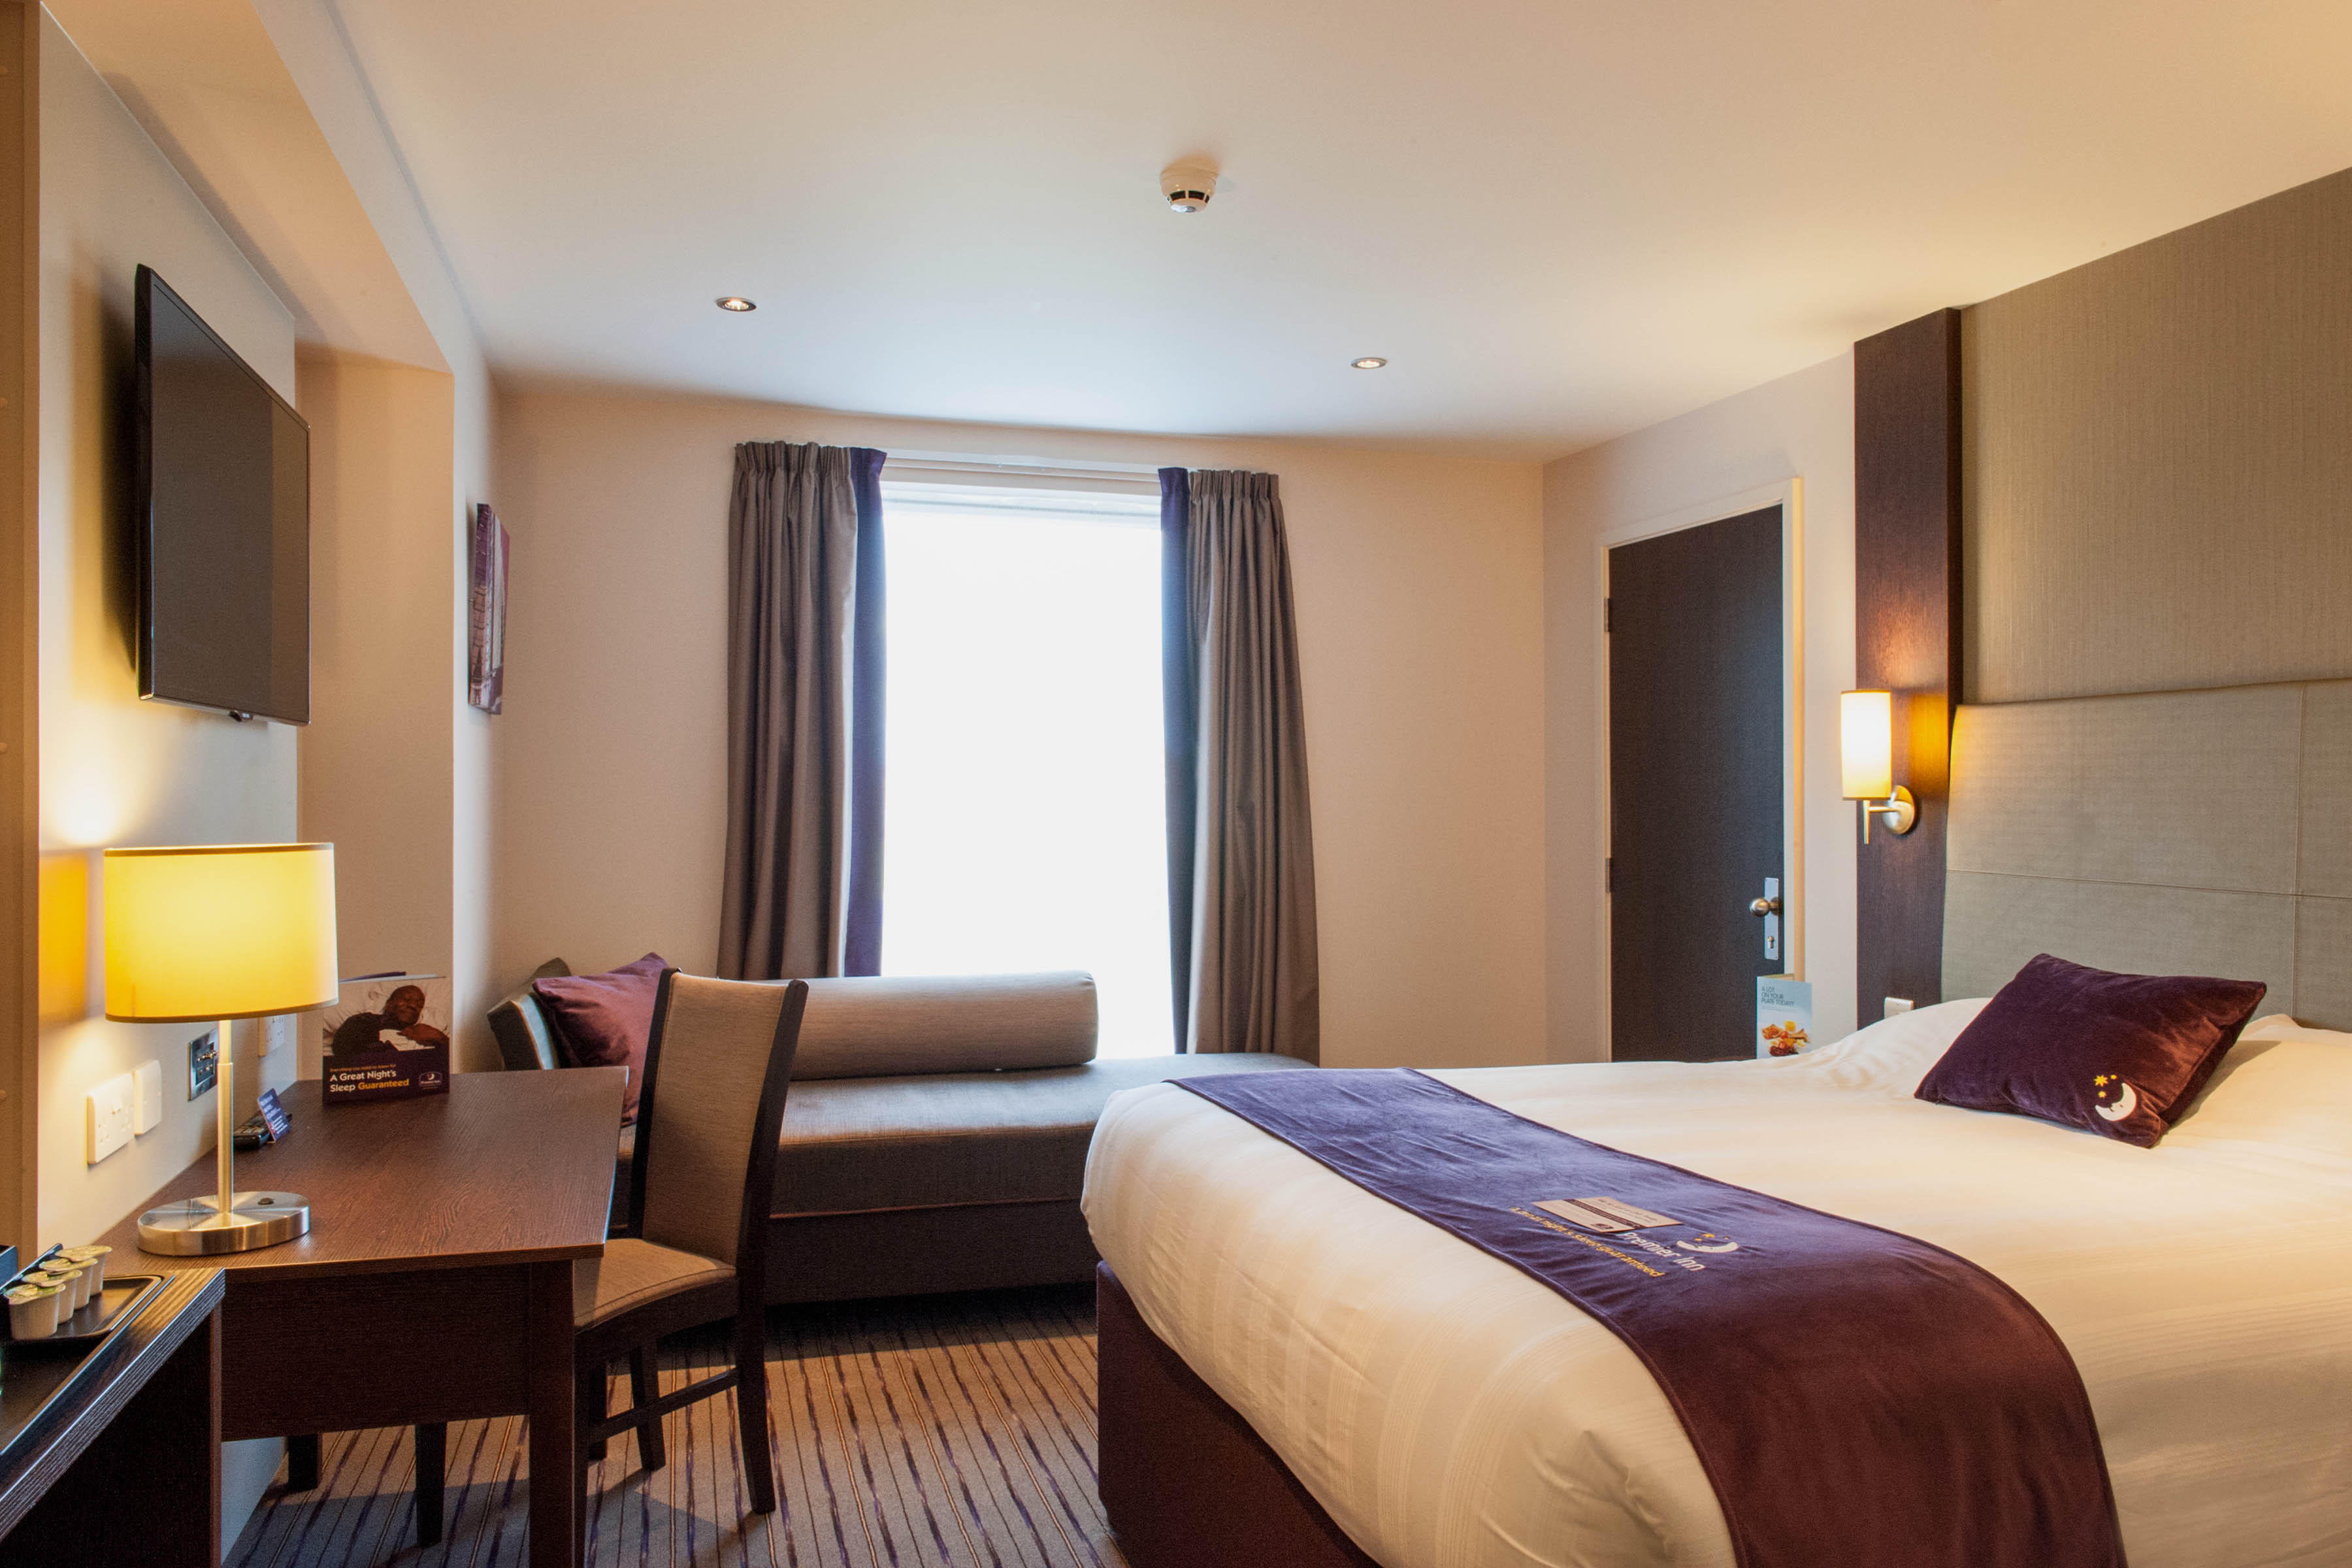 Premier Inn bedroom Premier Inn Witney hotel Witney 03333 219343